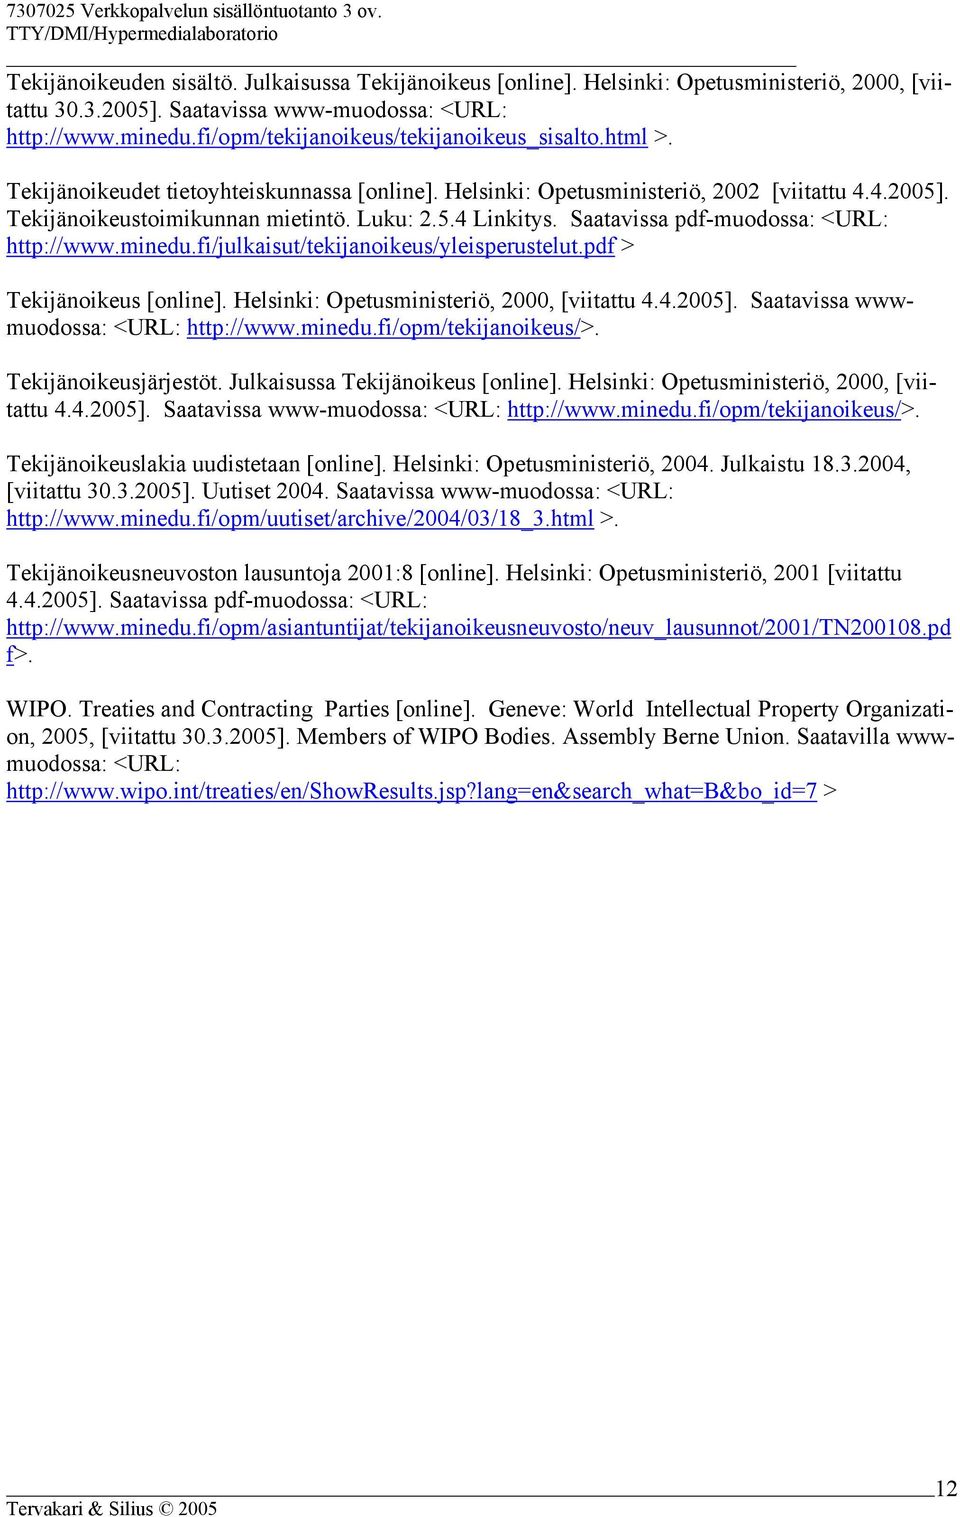 Saatavissa pdf-muodossa: <URL: http://www.minedu.fi/julkaisut/tekijanoikeus/yleisperustelut.pdf > Tekijänoikeus [online]. Helsinki: Opetusministeriö, 2000, [viitattu 4.4.2005].